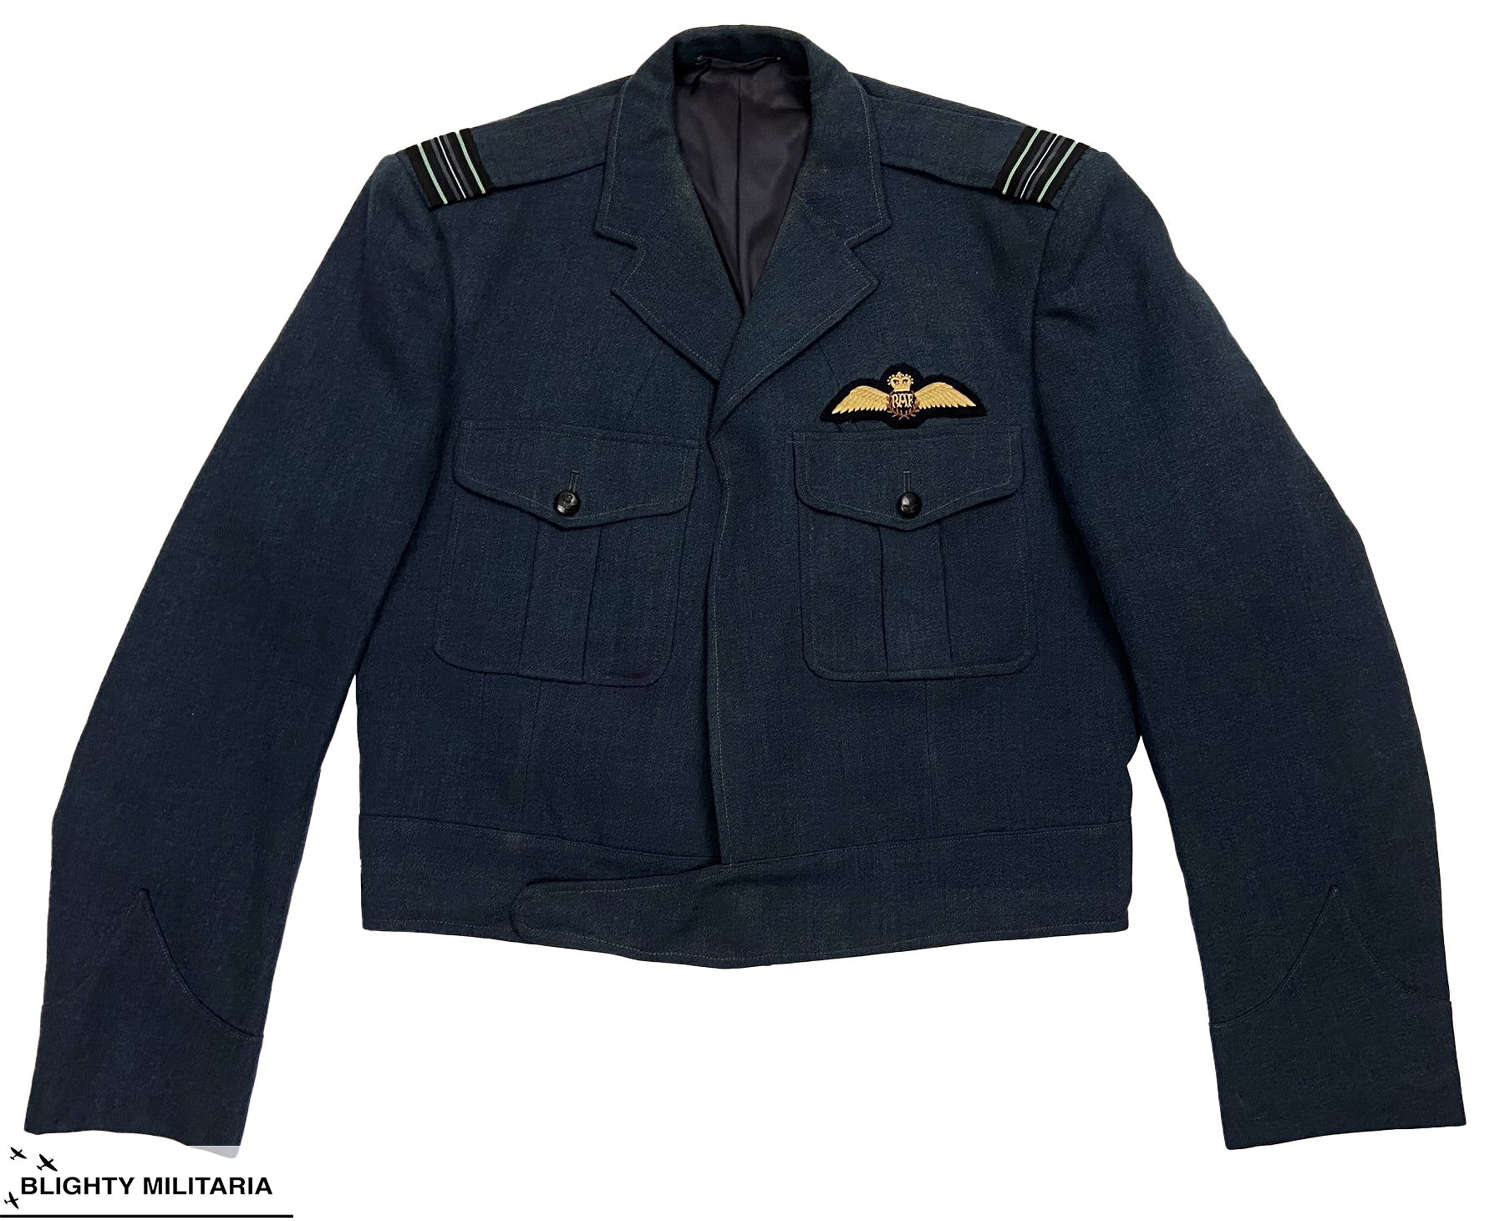 Original 1960s RAF Officers Battledress Jacket by 'Alkit'